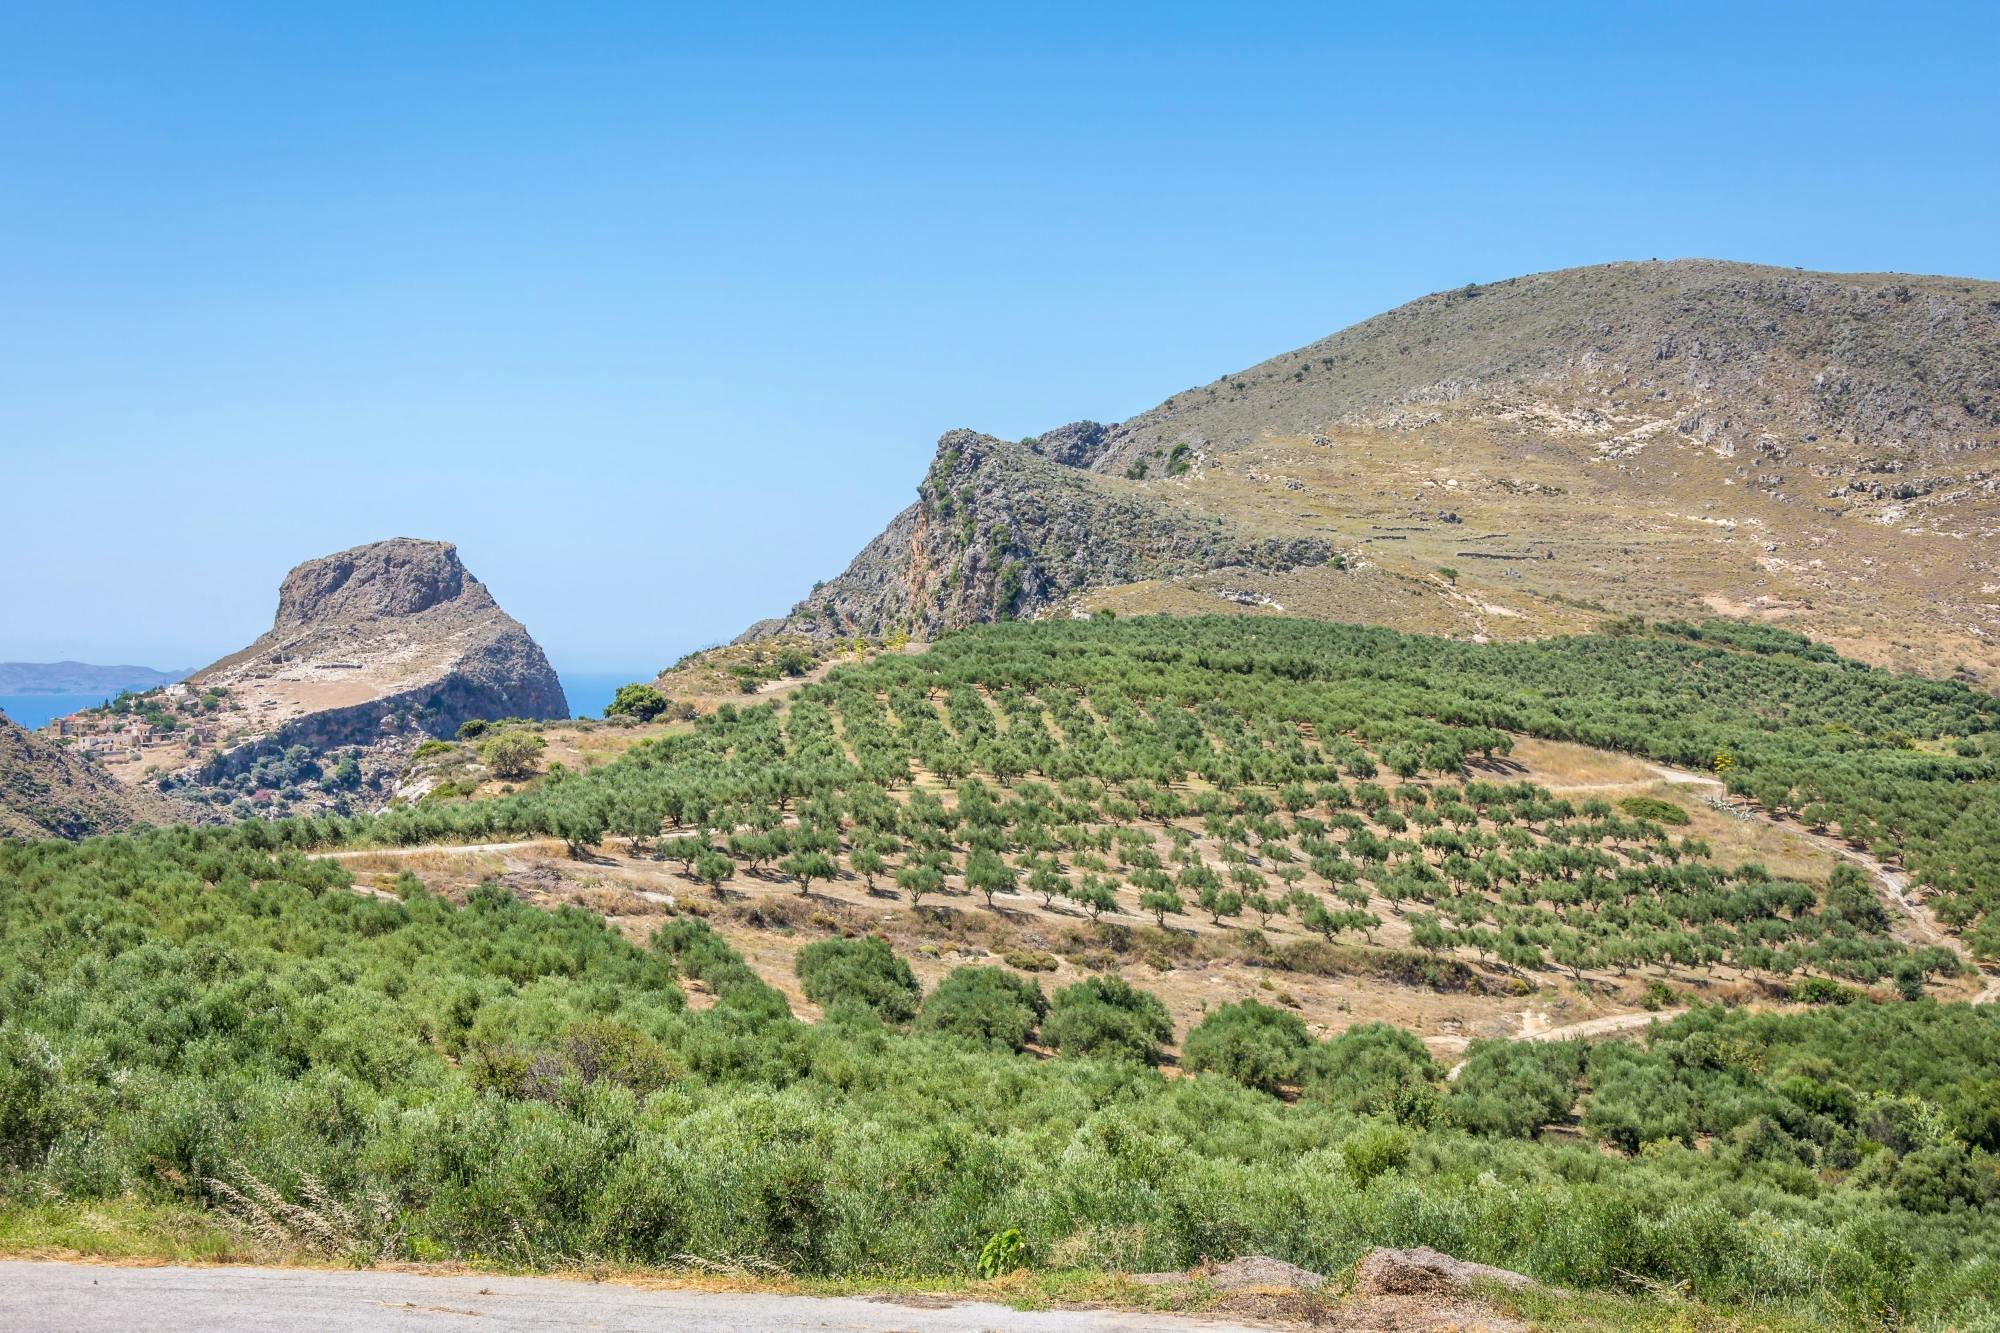 Rundtur på vestlige Kreta med besøg på vingård og olivenolieproducent